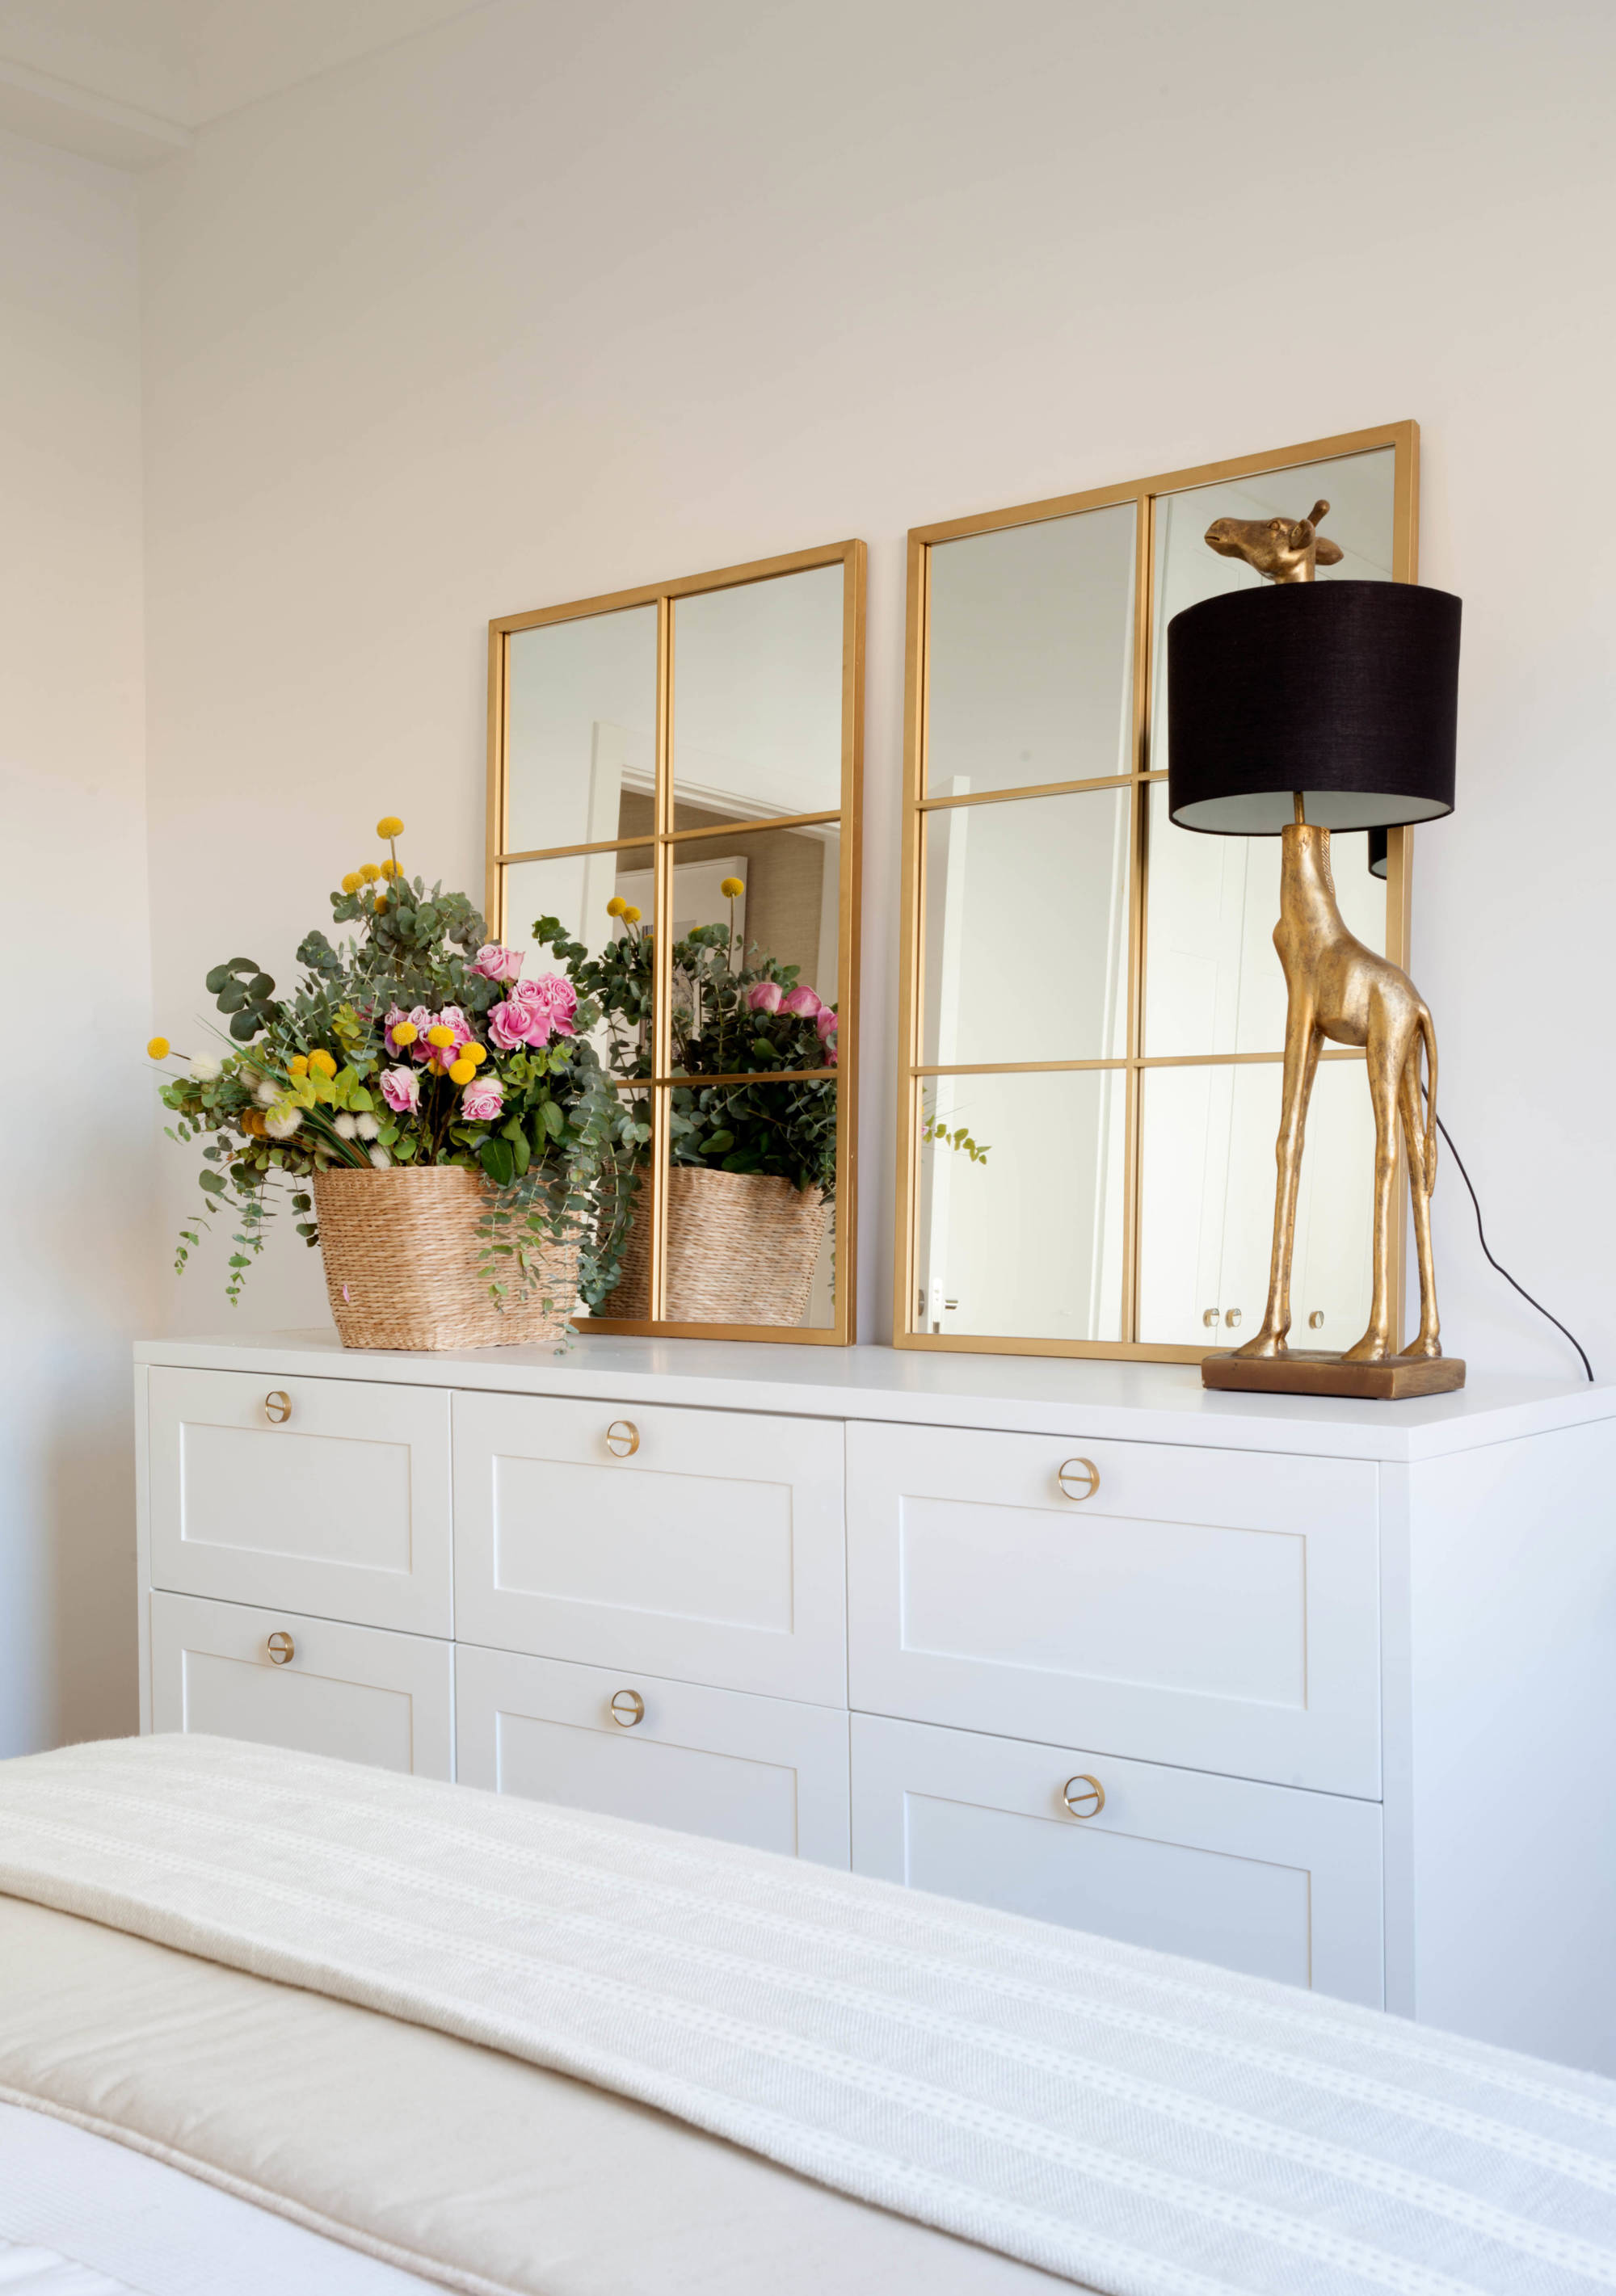 Dormitorio principal con cómoda blanca con espejos de cuarterones dorados, lámpara en forma de jirafa dorada y cesta con flores.